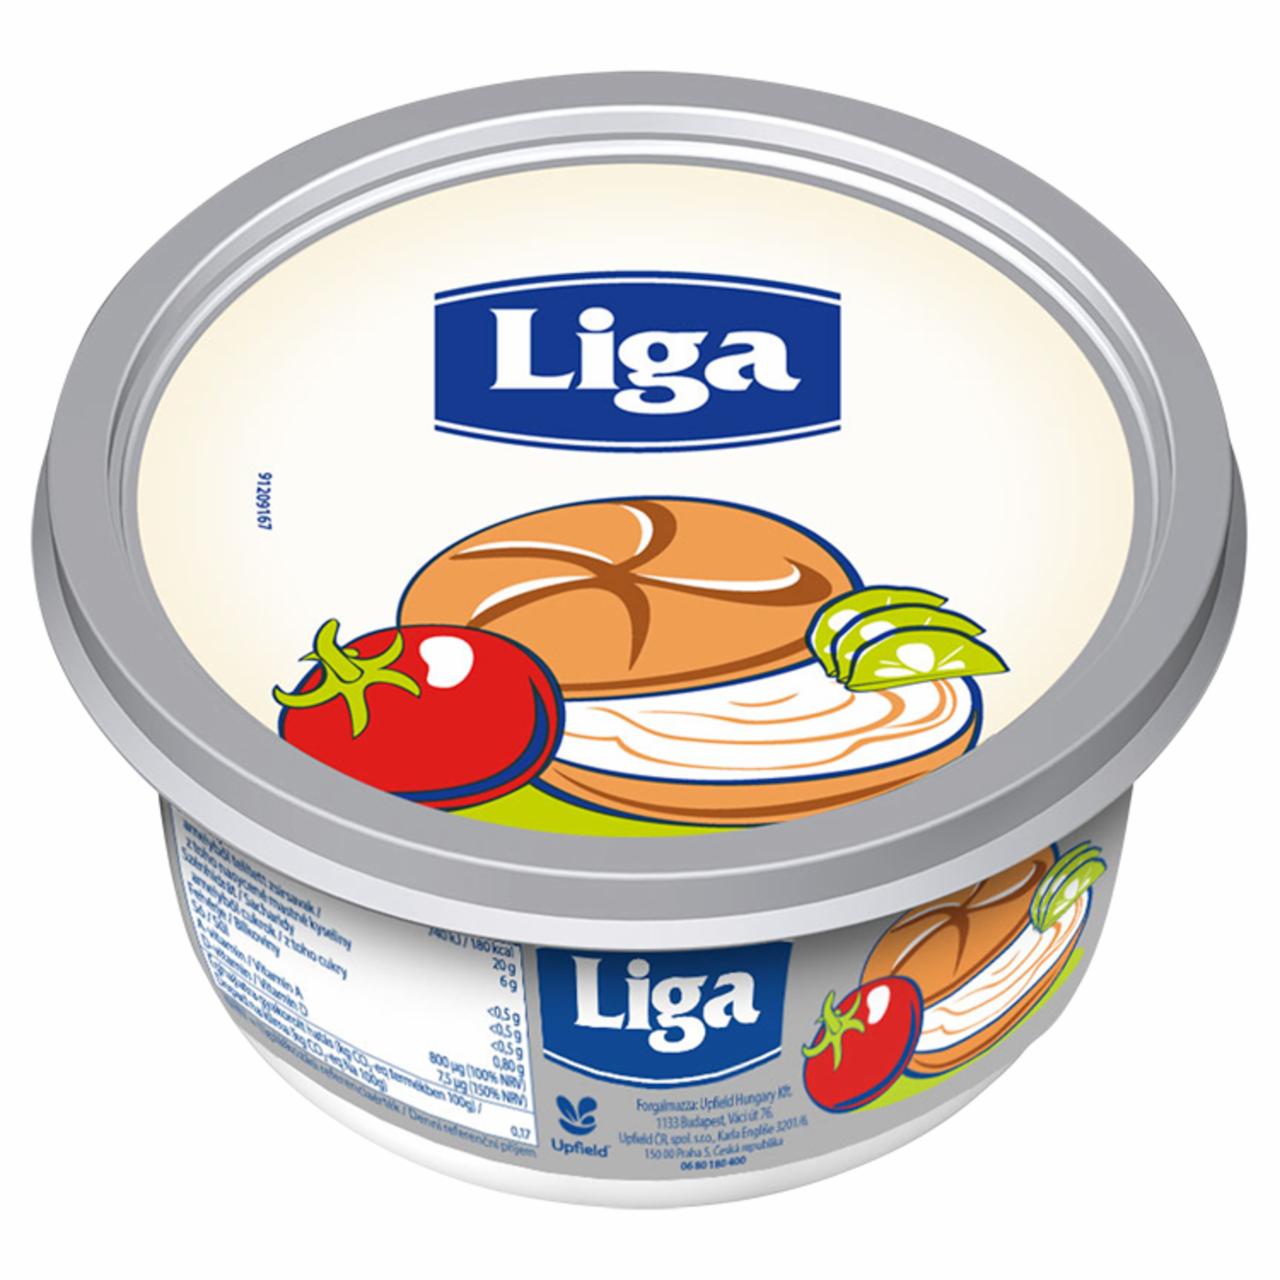 Képek - Liga 20% zsírtartalmú margarin 450 g